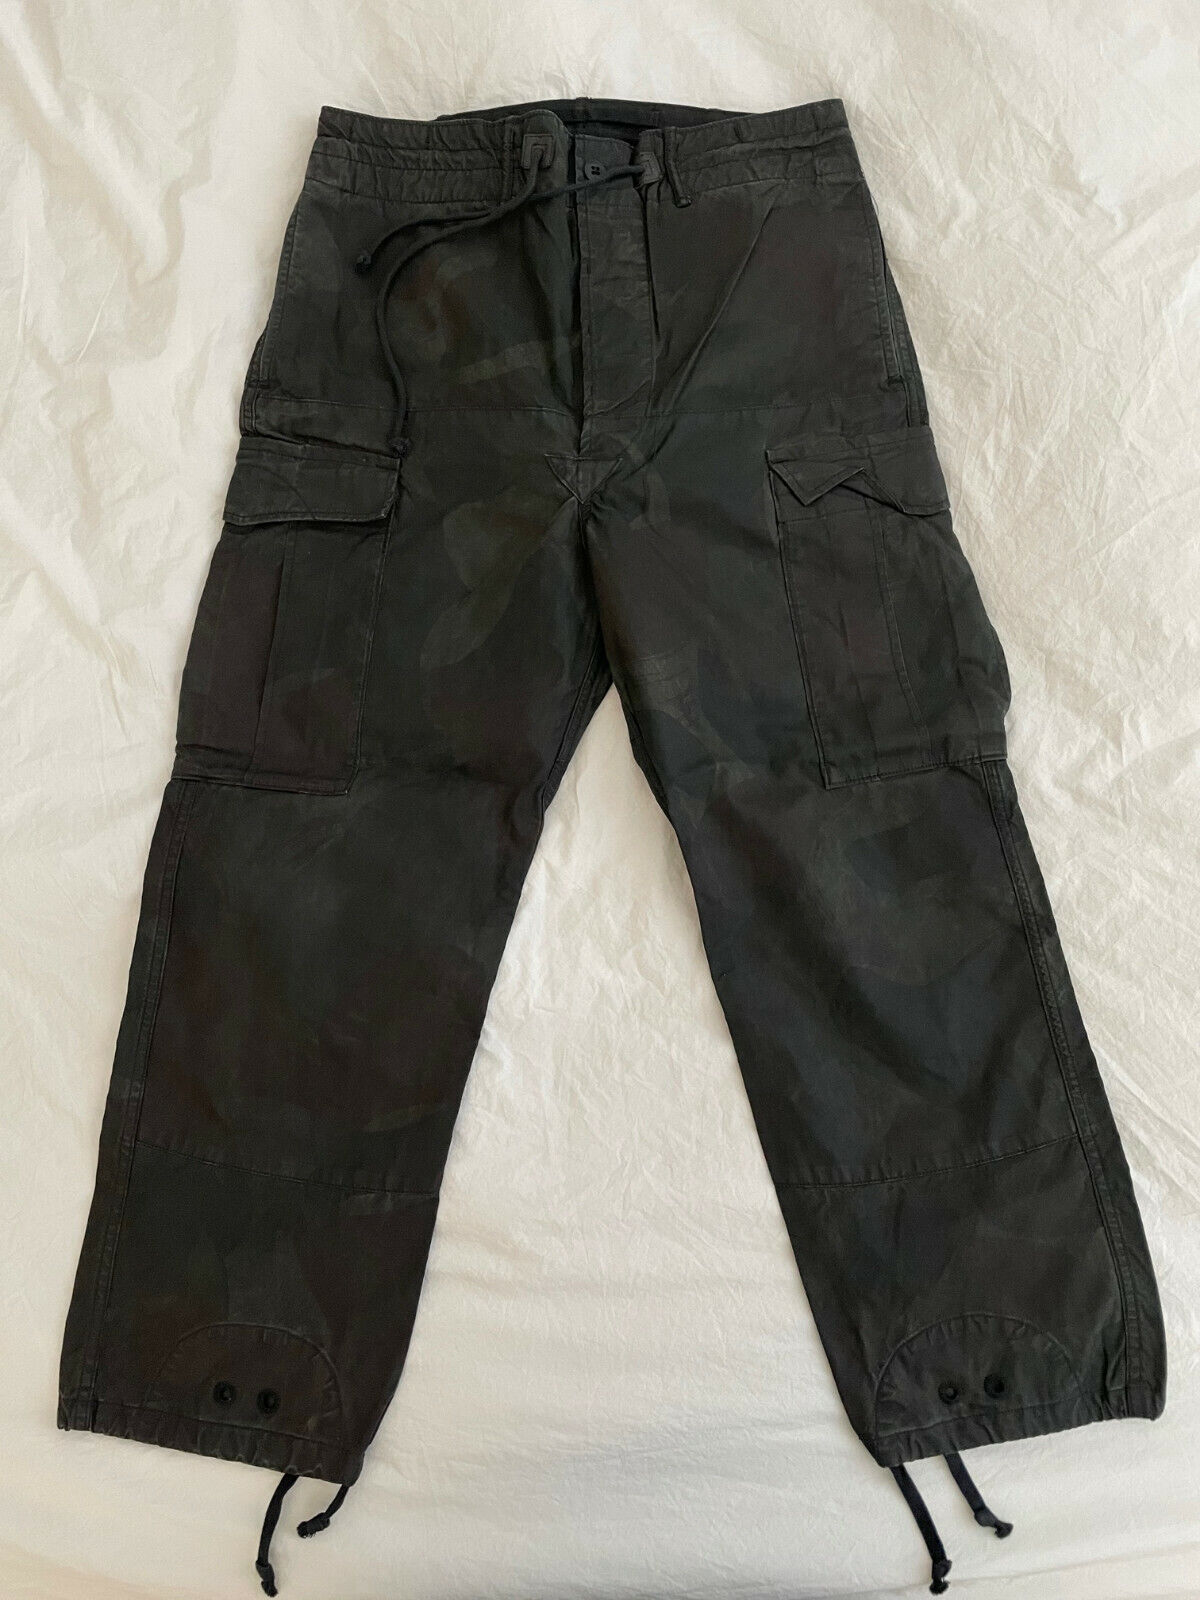 DOUBLE RL RRL Ralph Lauren Camo Poplin Cargo Pants 31x30